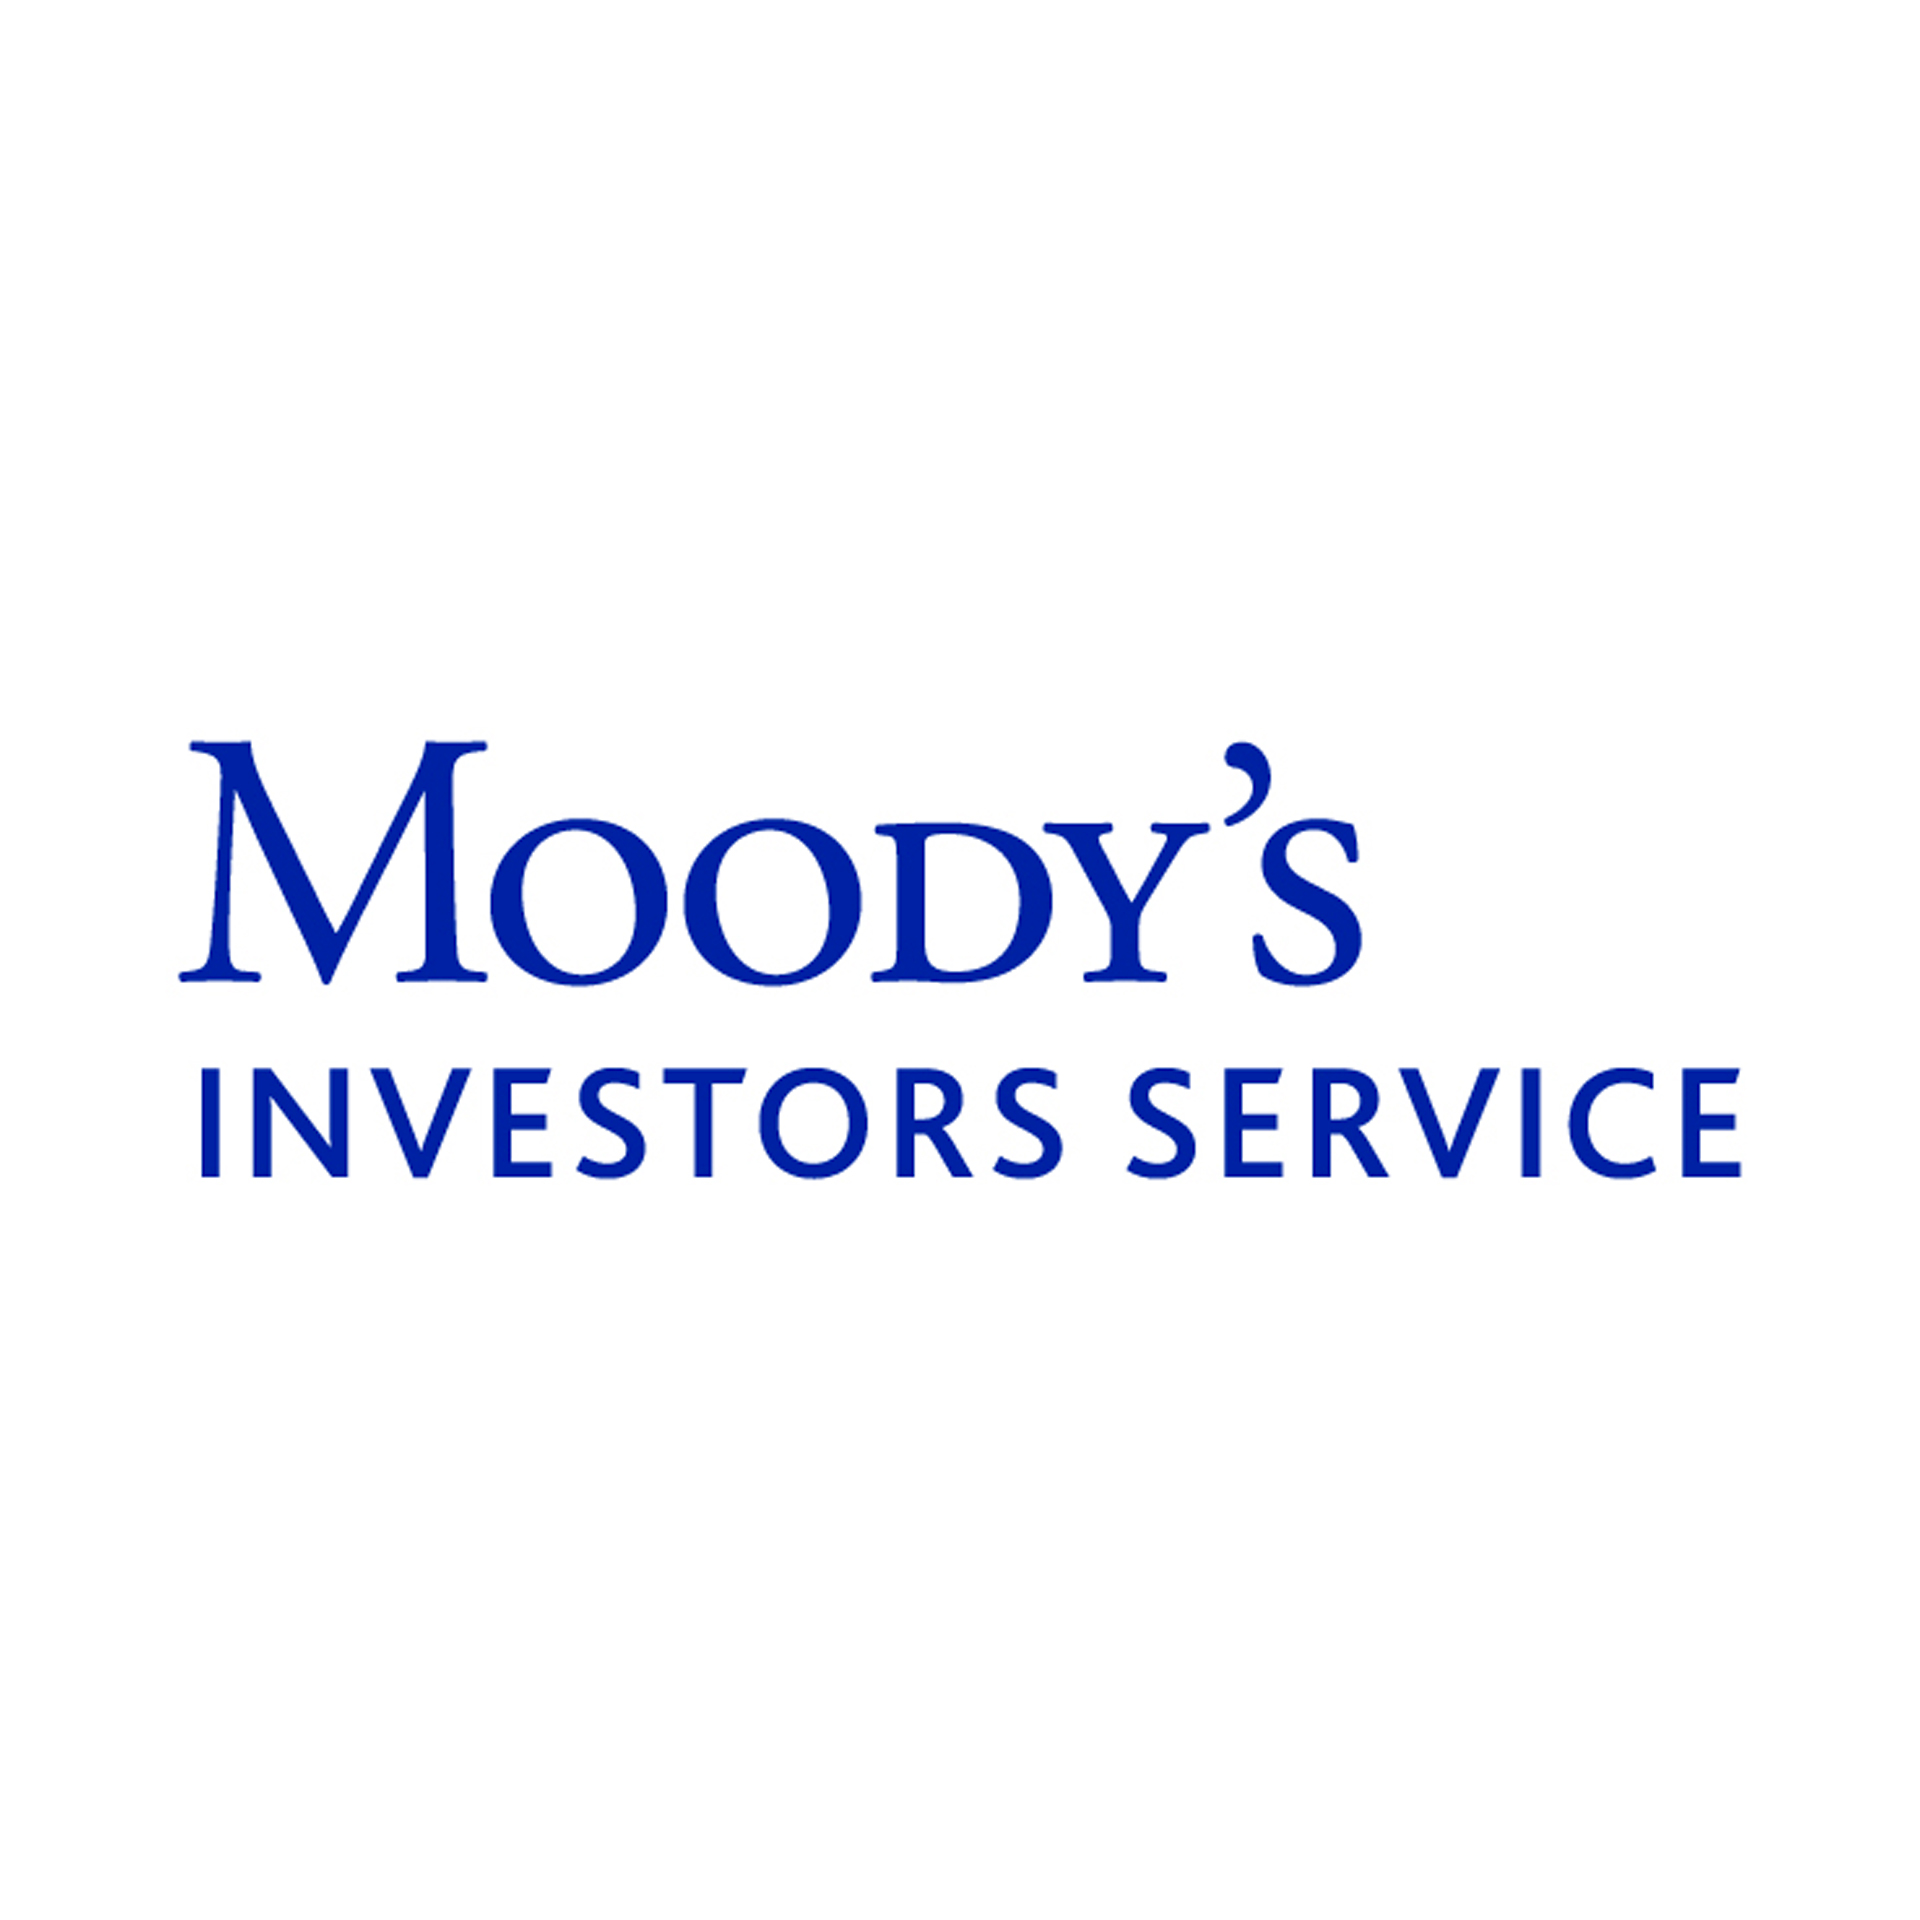 Nota Aa2 do serviço de investidores da Moody’s